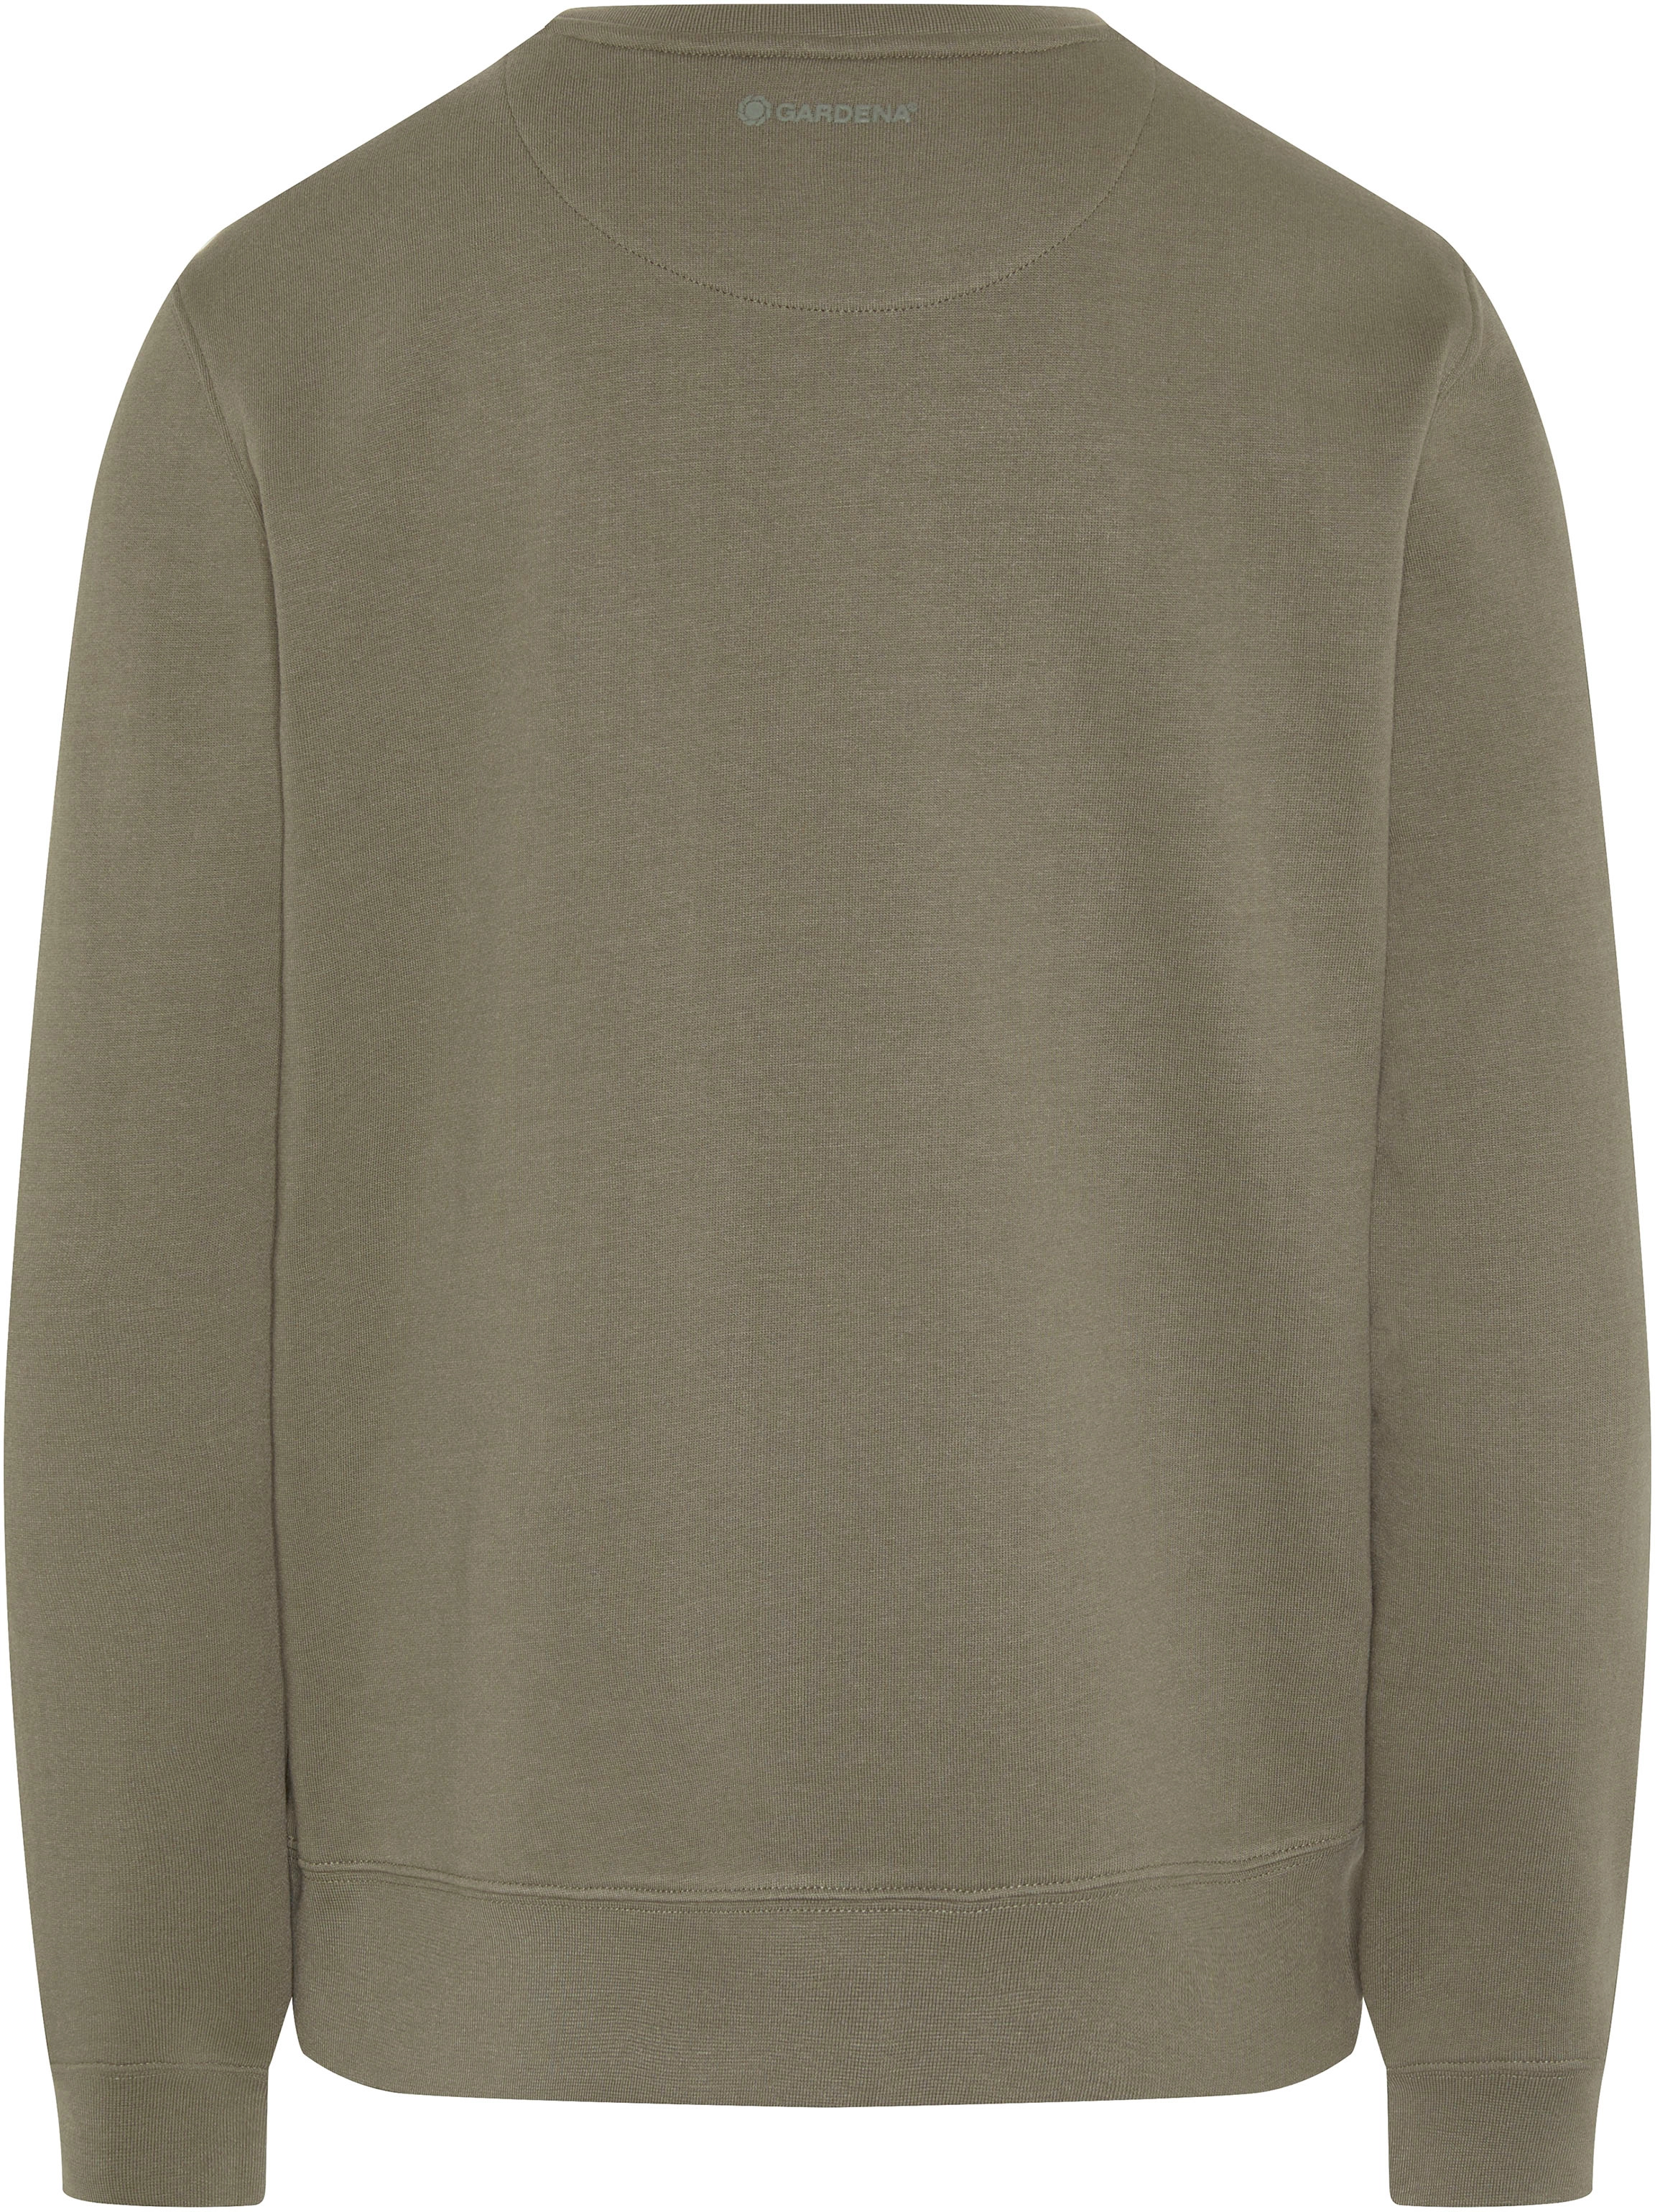 XS kaufen Damen-Sweatshirt Gardena bei Dusty OBI Olive